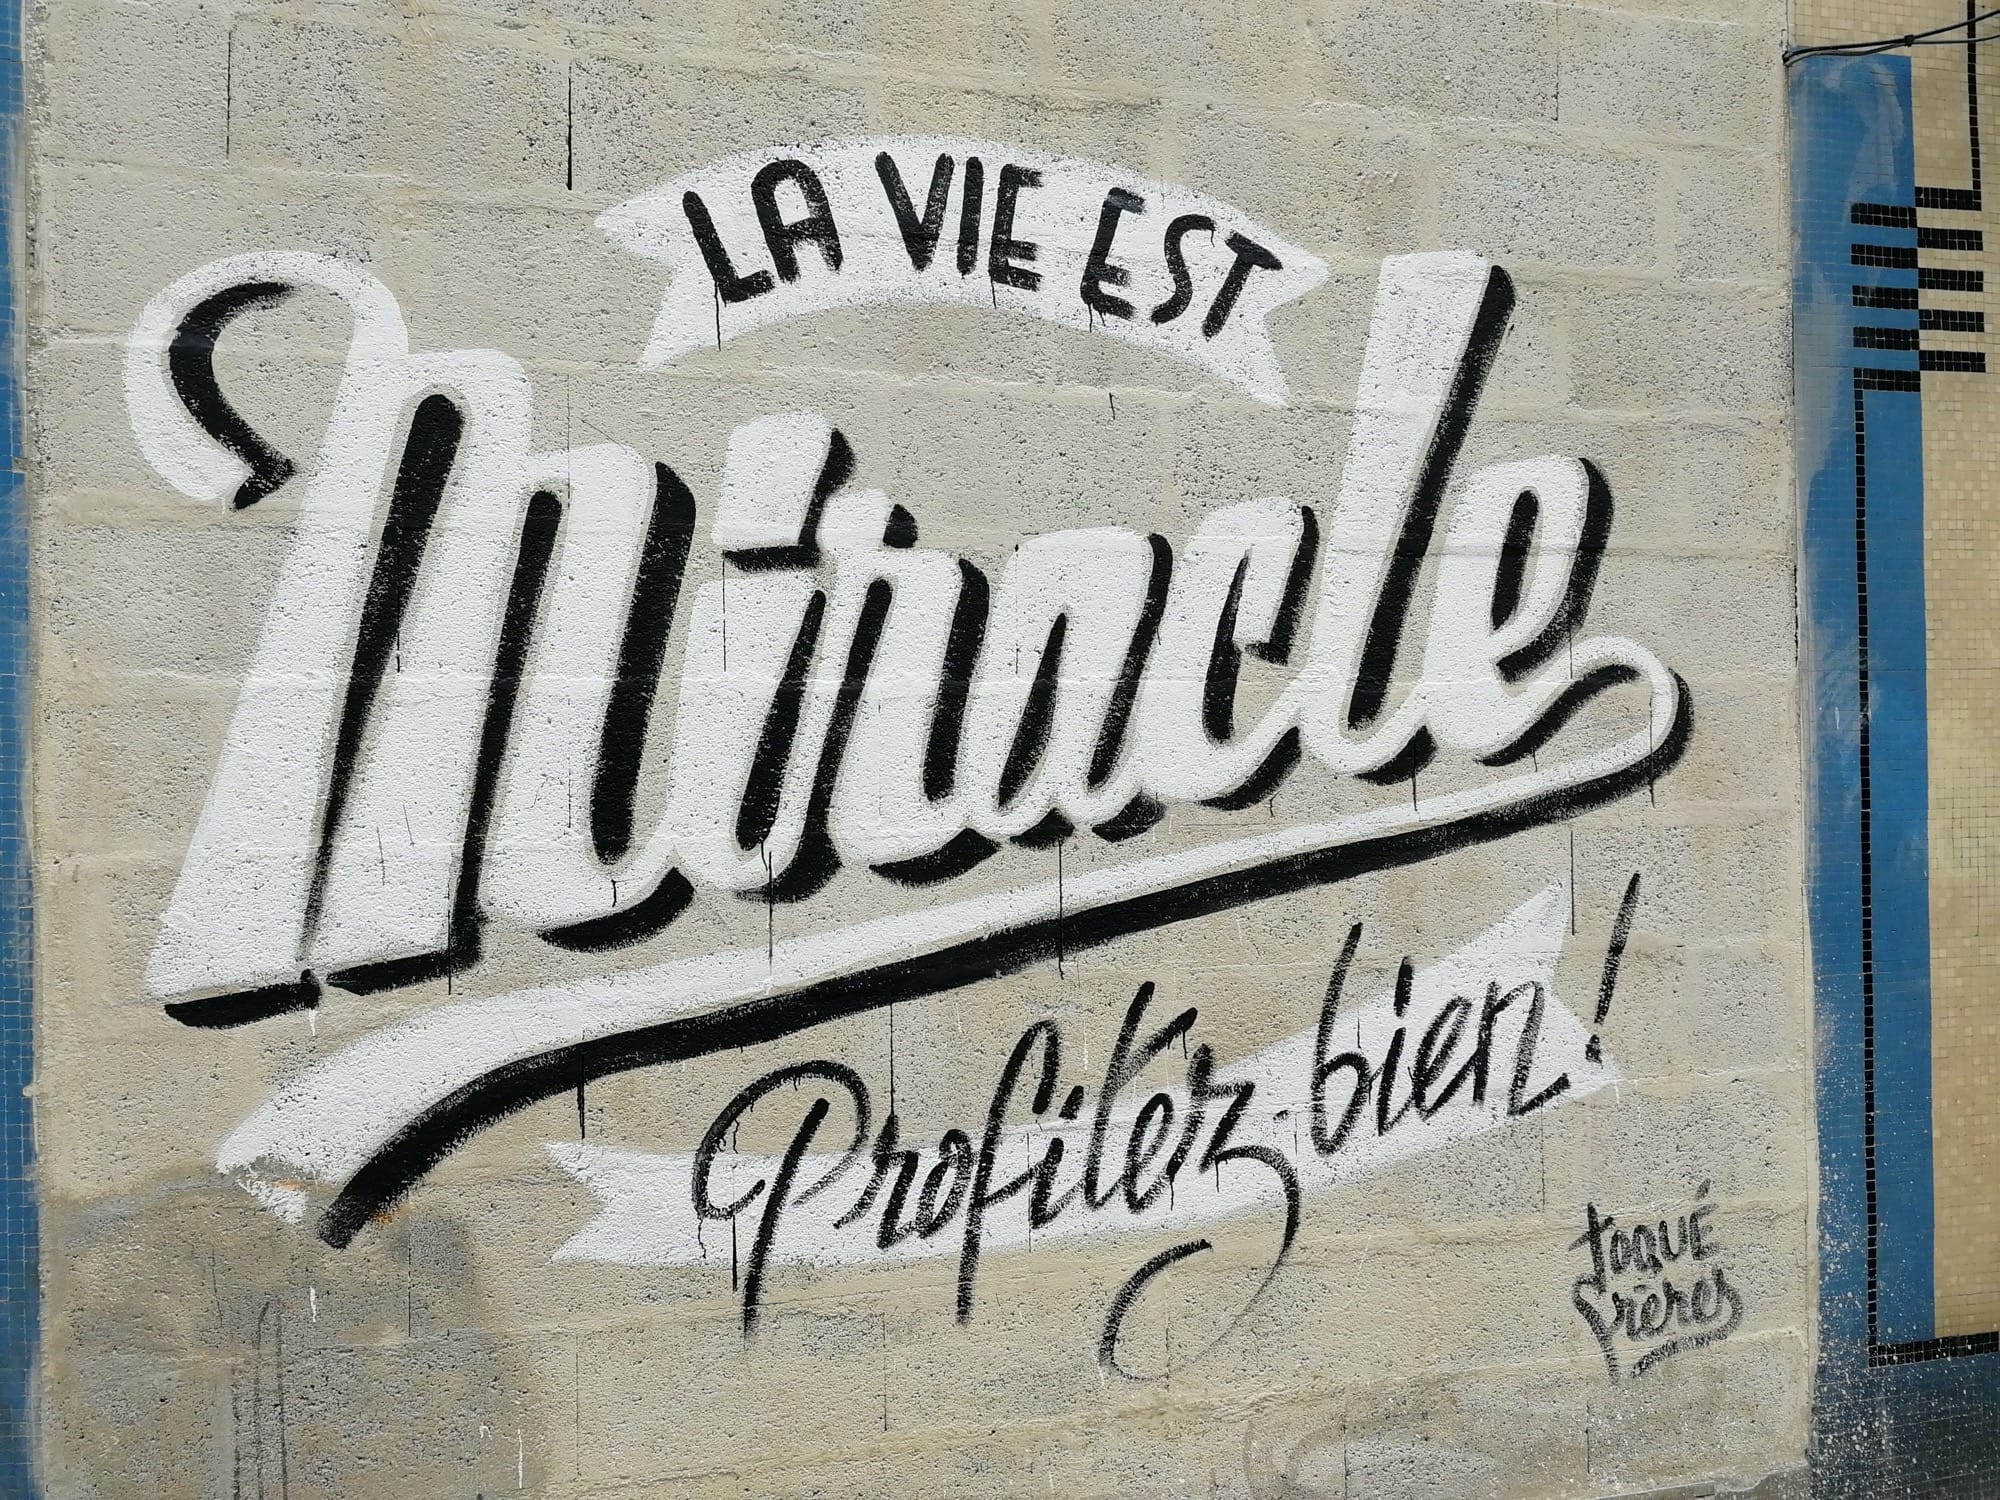 Graffiti 1523 La vie est miracle, profitez bien ! by the artist Toqué frères captured by Rabot in Nantes France